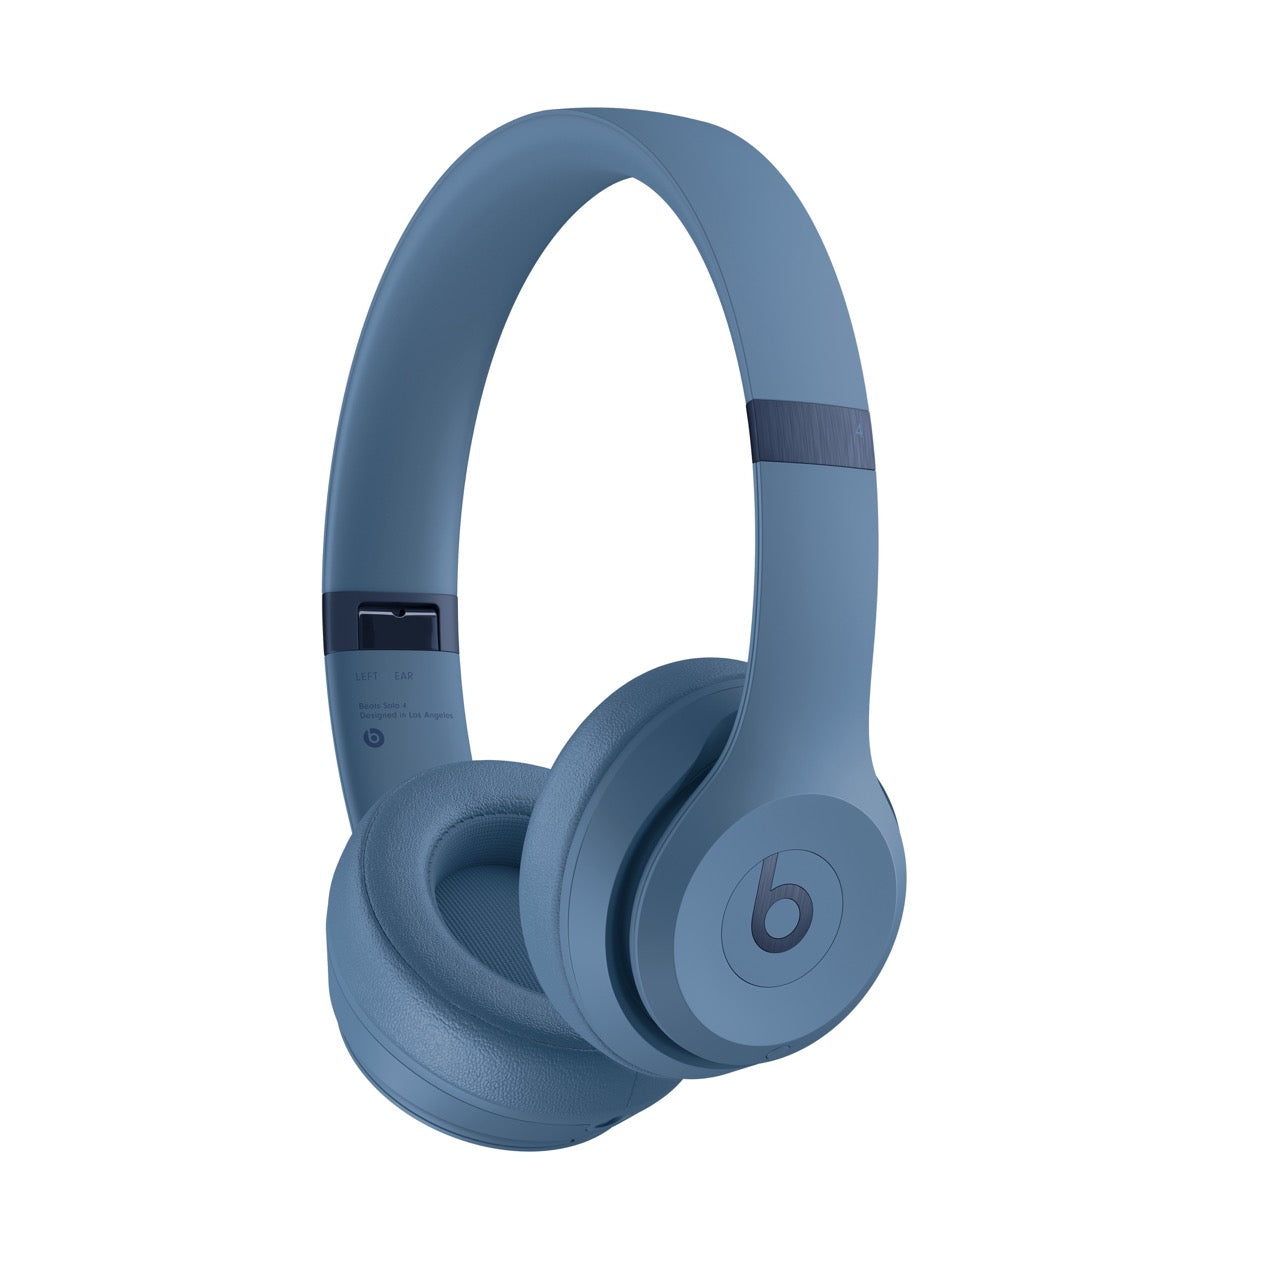 Beats Solo 4 — On-Ear Wireless Headphones